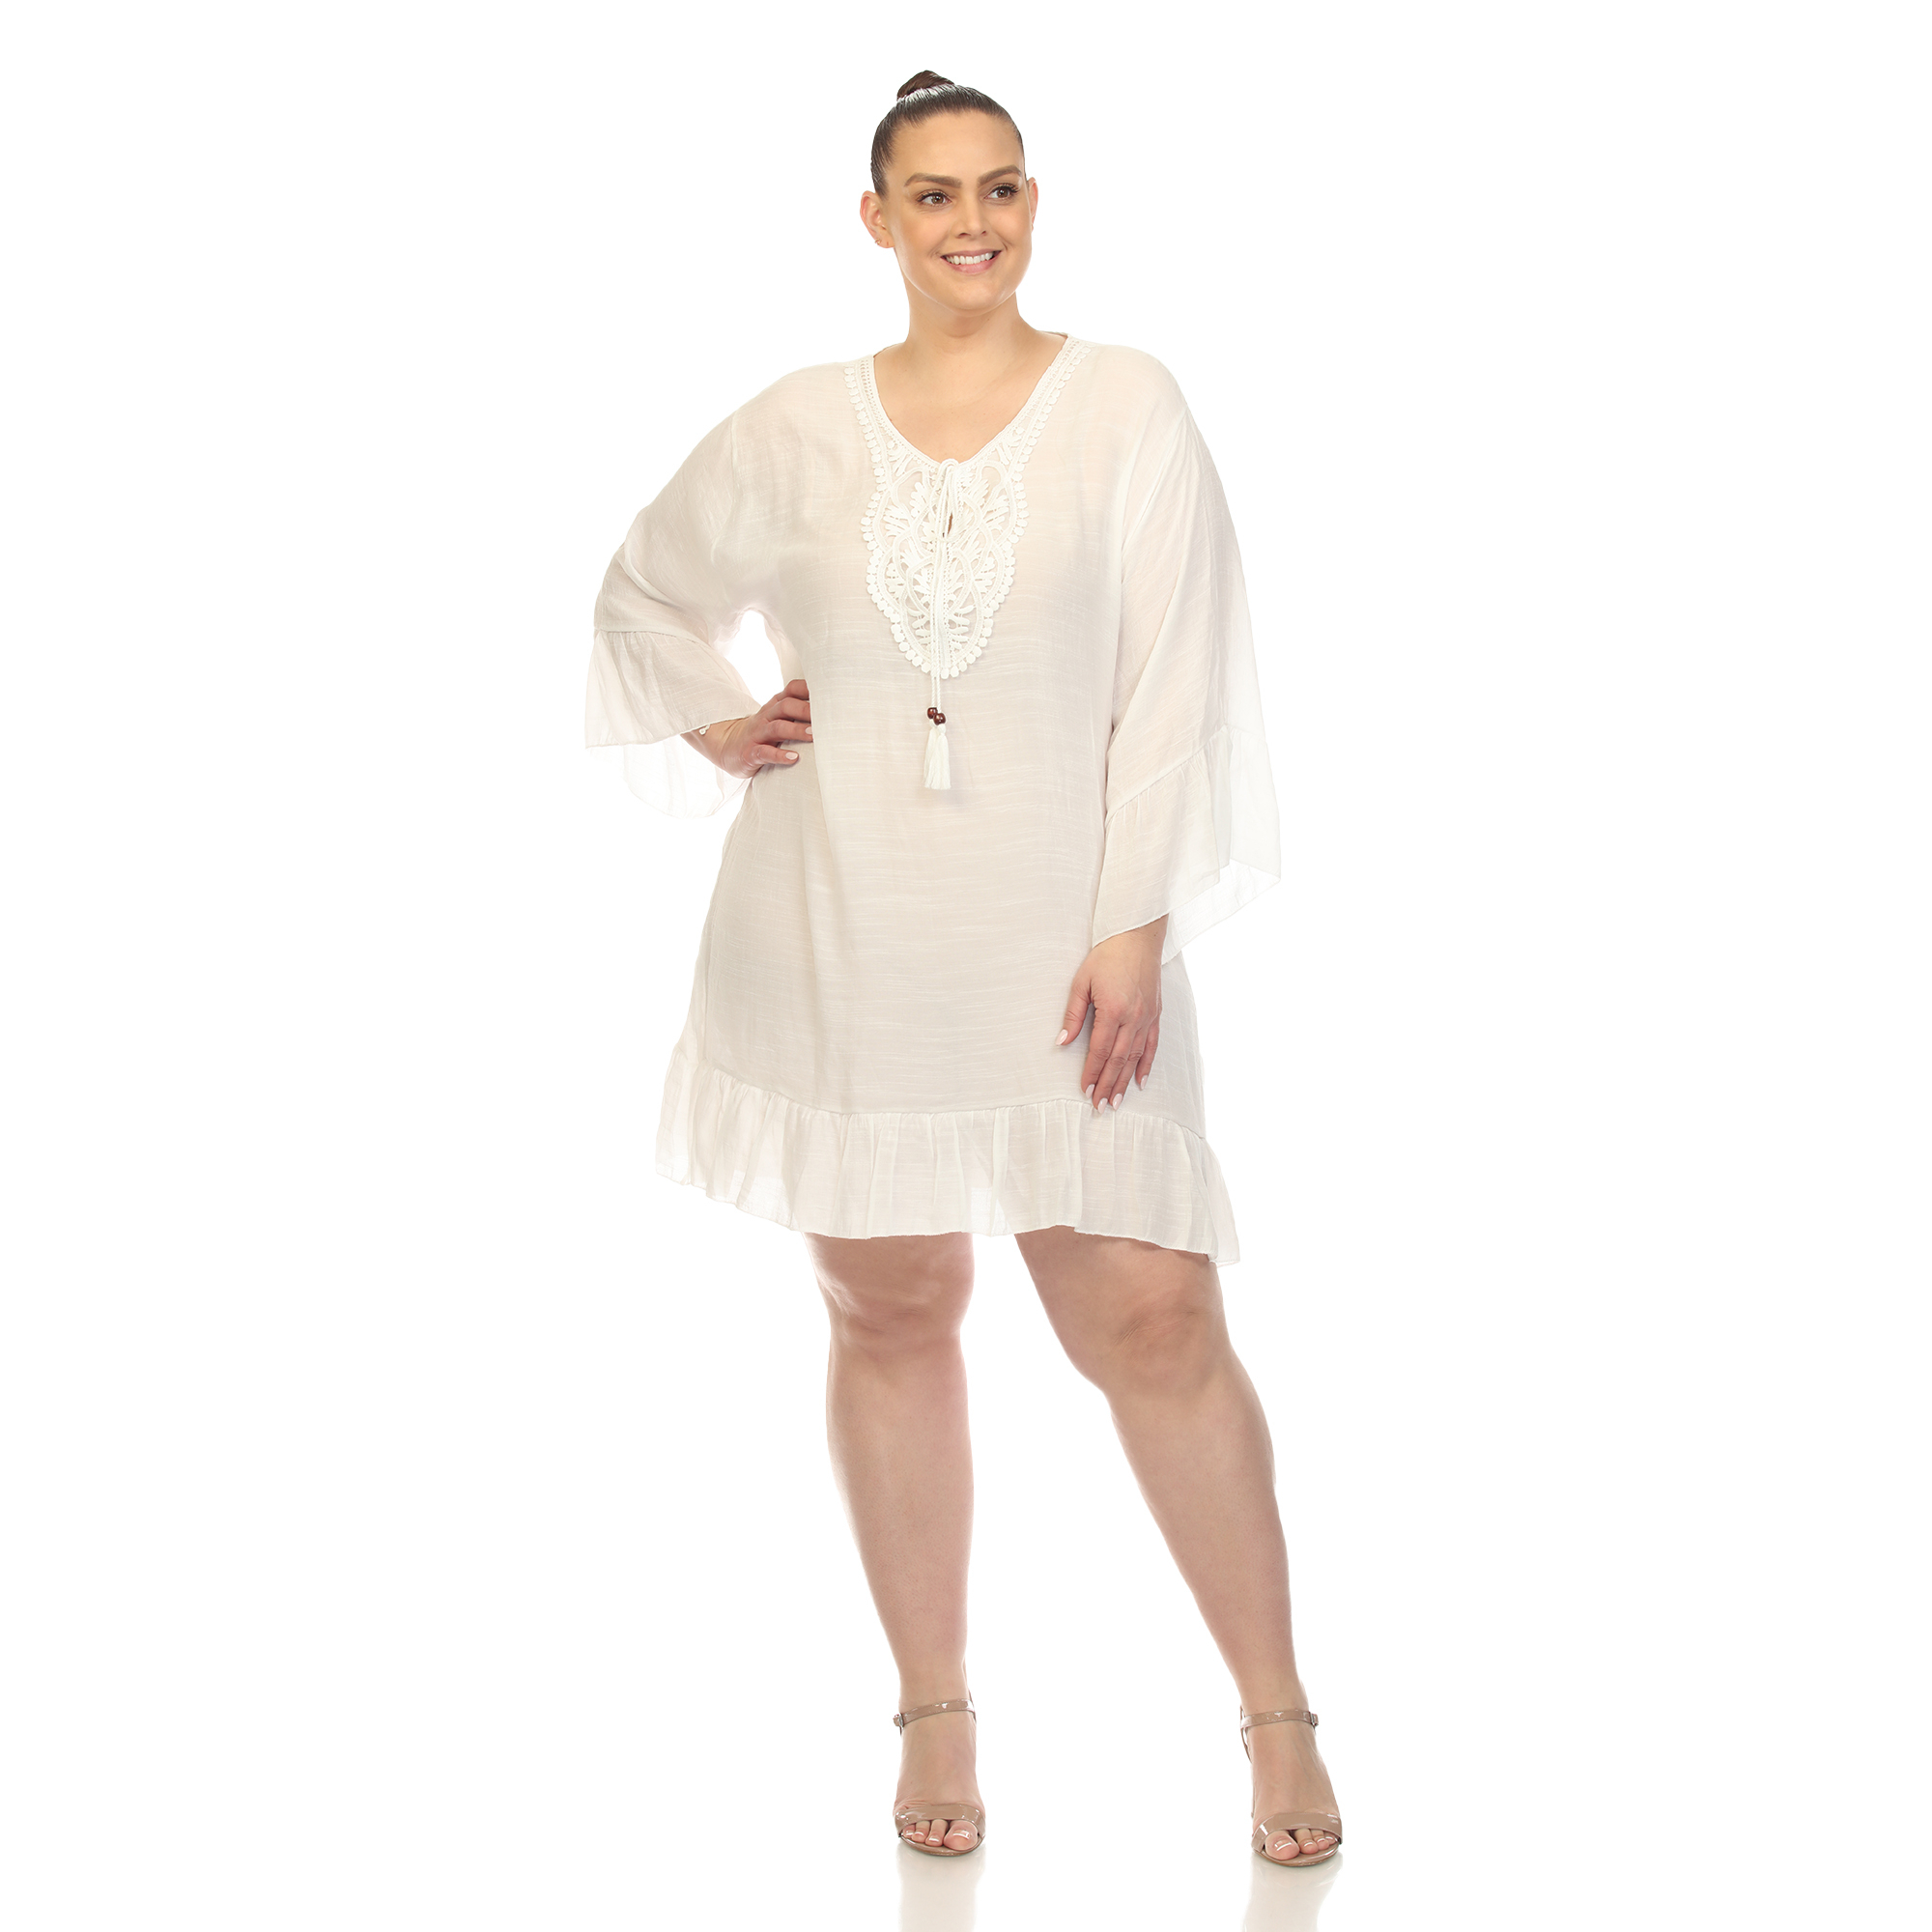 White Mark Women's Sheer Crochet Cover Up Dress - White, One Size (Plus)